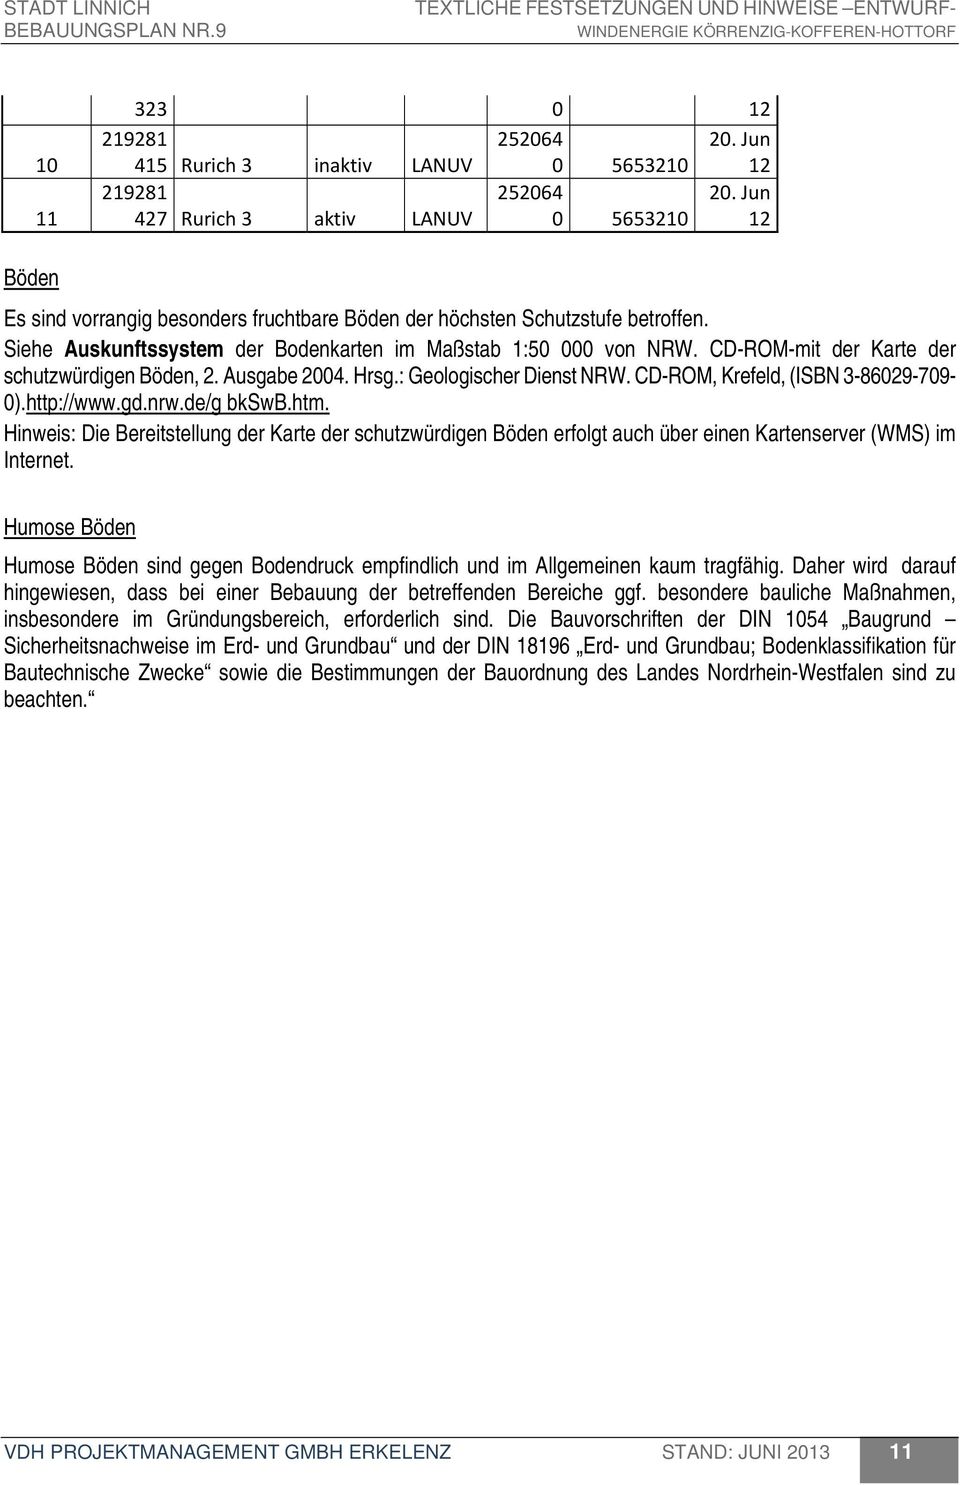 CD-ROM, Krefeld, (ISBN 3-86029-709-0).http://www.gd.nrw.de/g bkswb.htm. Hinweis: Die Bereitstellung der Karte der schutzwürdigen Böden erfolgt auch über einen Kartenserver (WMS) im Internet.